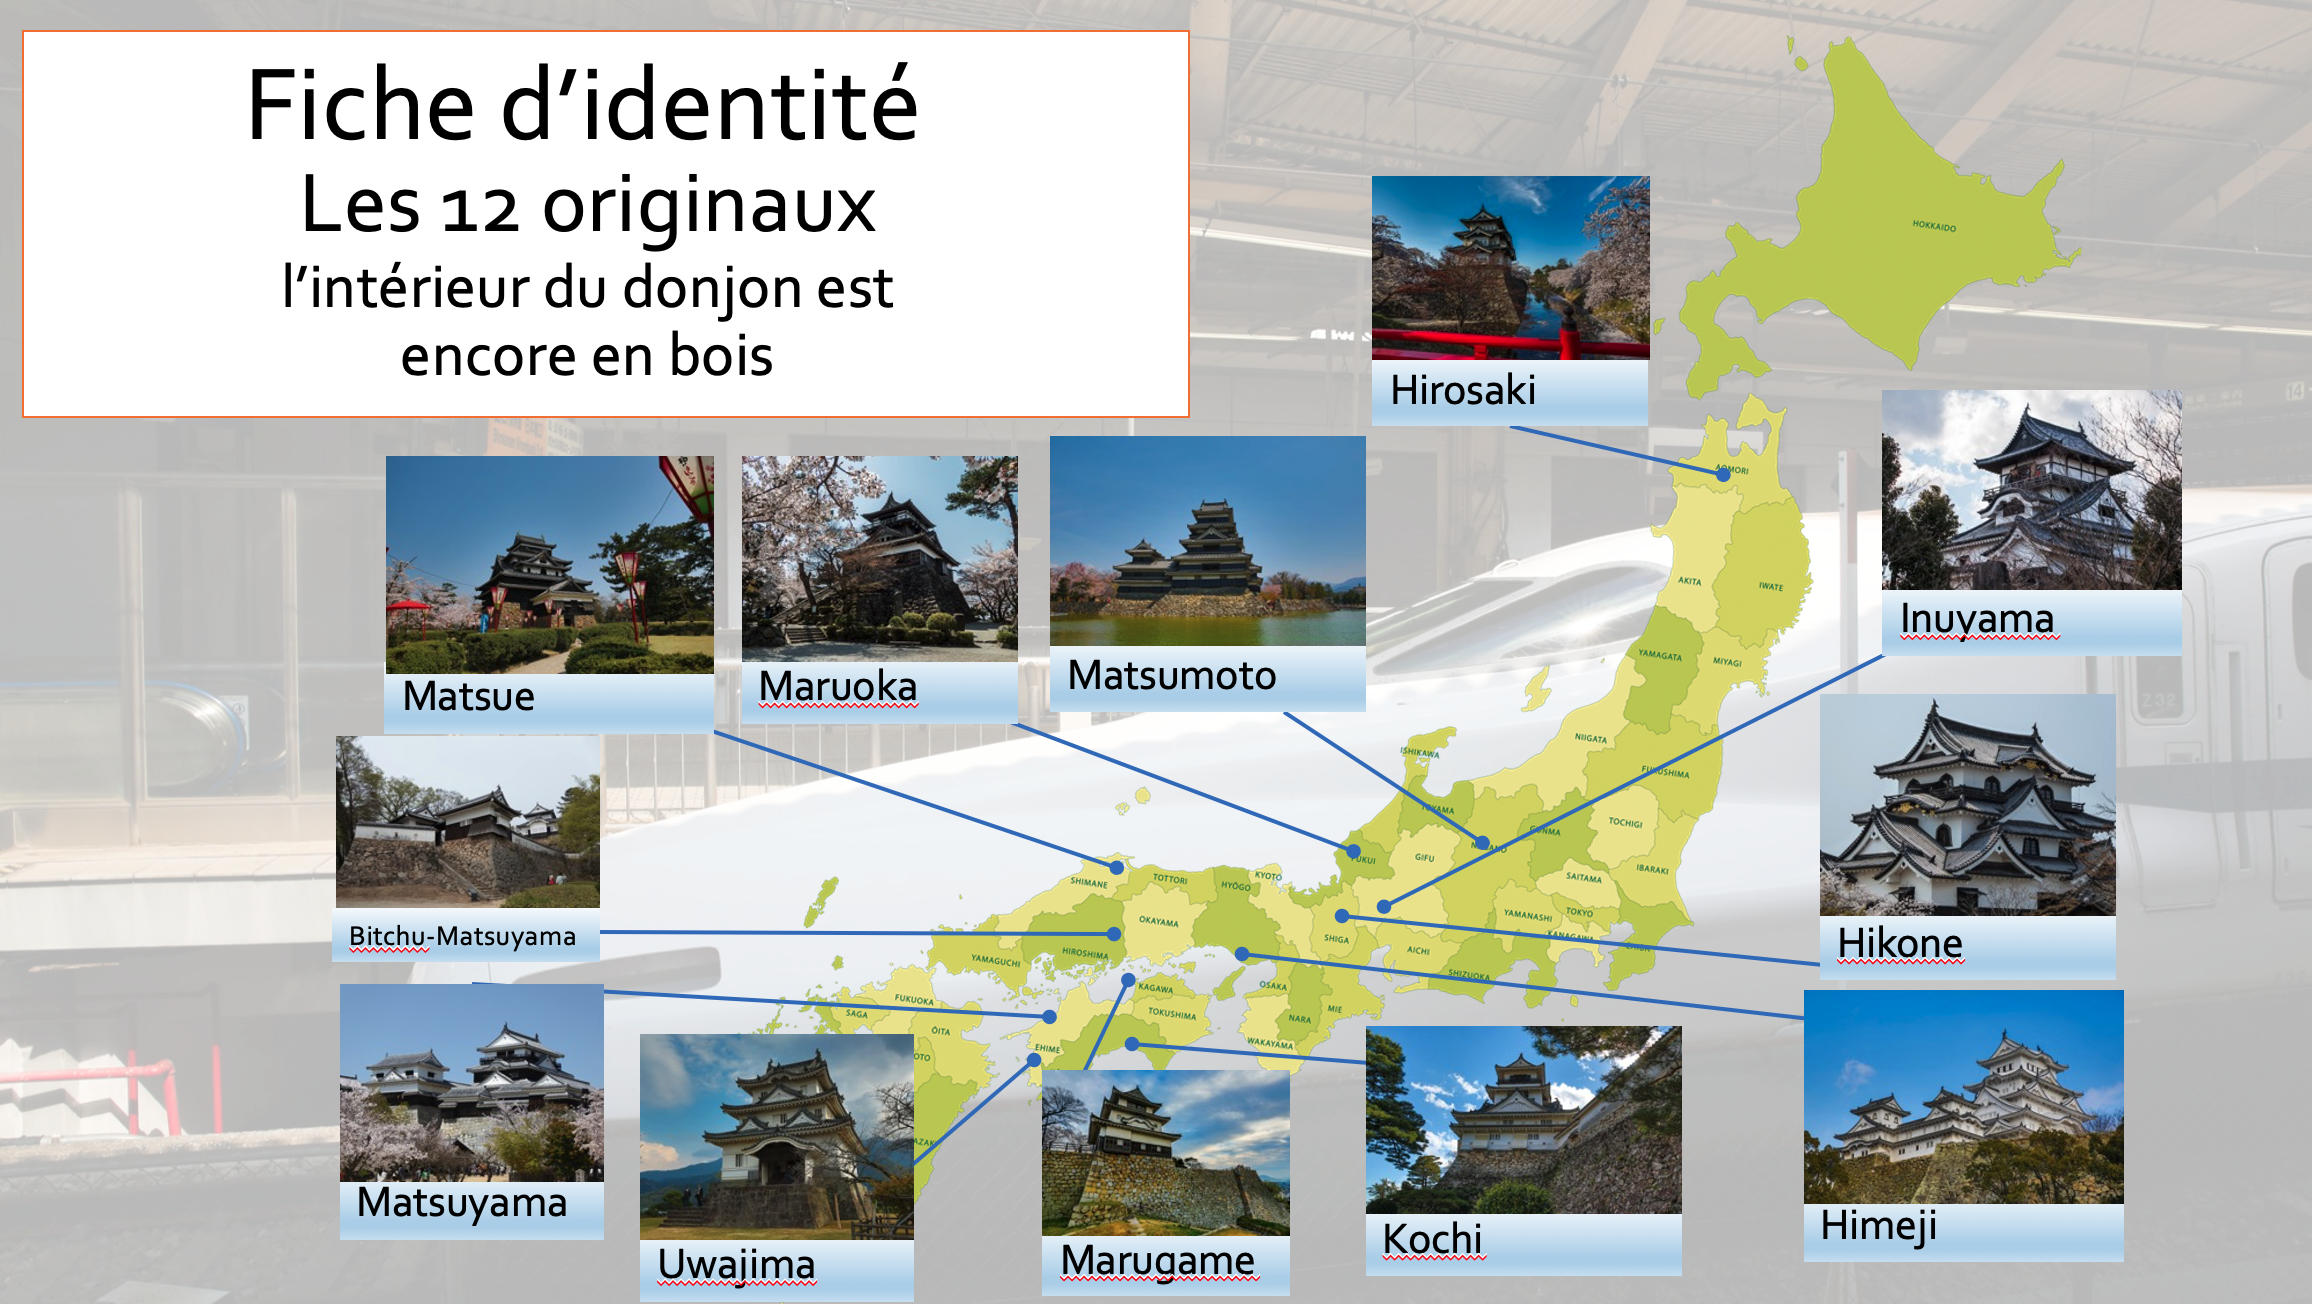 Les 12 châteaux originaux au Japon